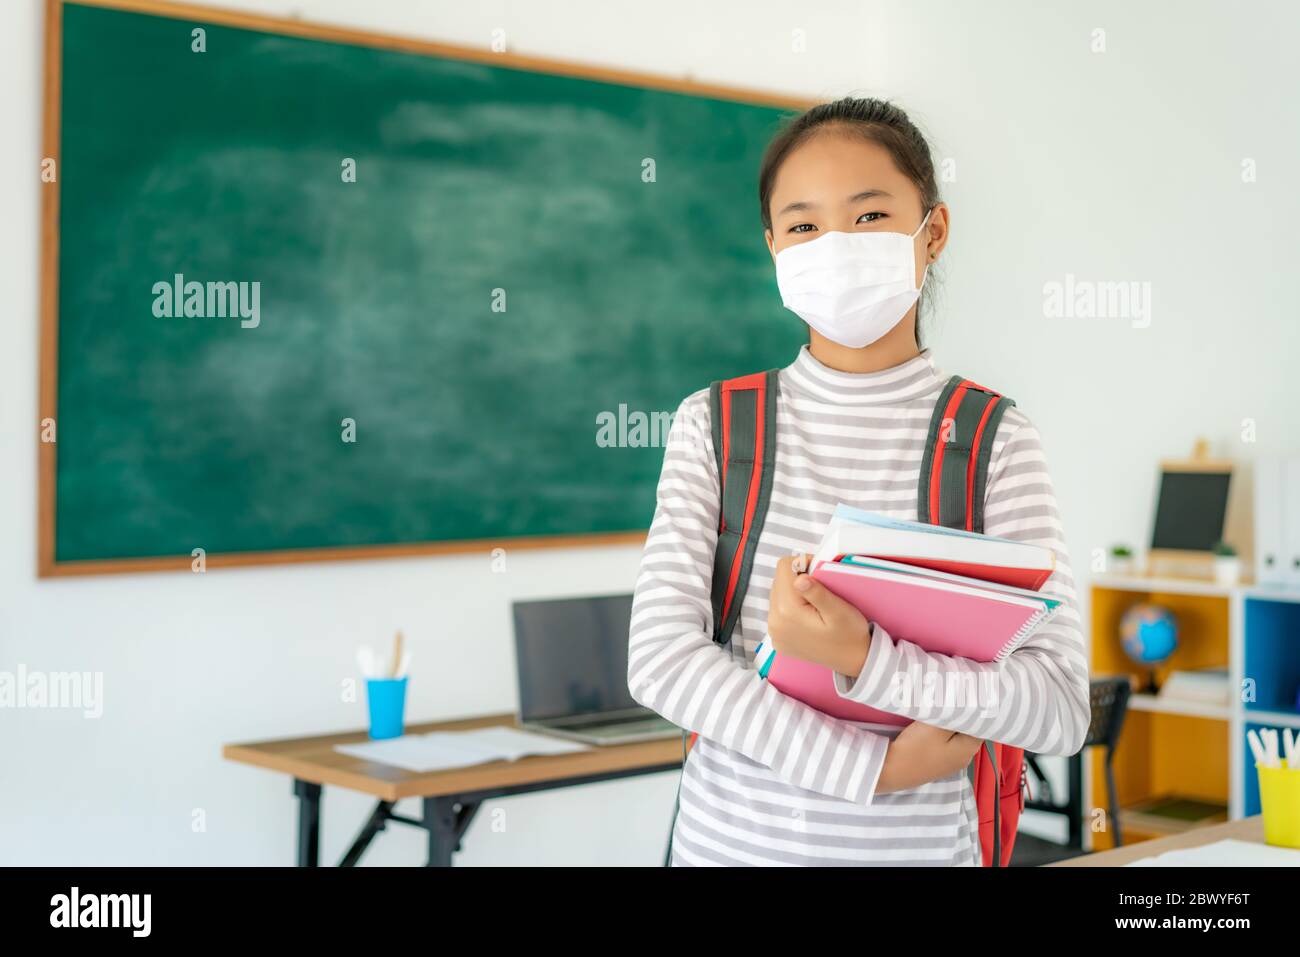 Asiatische Grundschüler Mädchen mit Rucksack und Bücher tragen Masken, um den Ausbruch von Covid 19 im Klassenzimmer zu verhindern, während wieder in der Schule öffnen ihre s Stockfoto